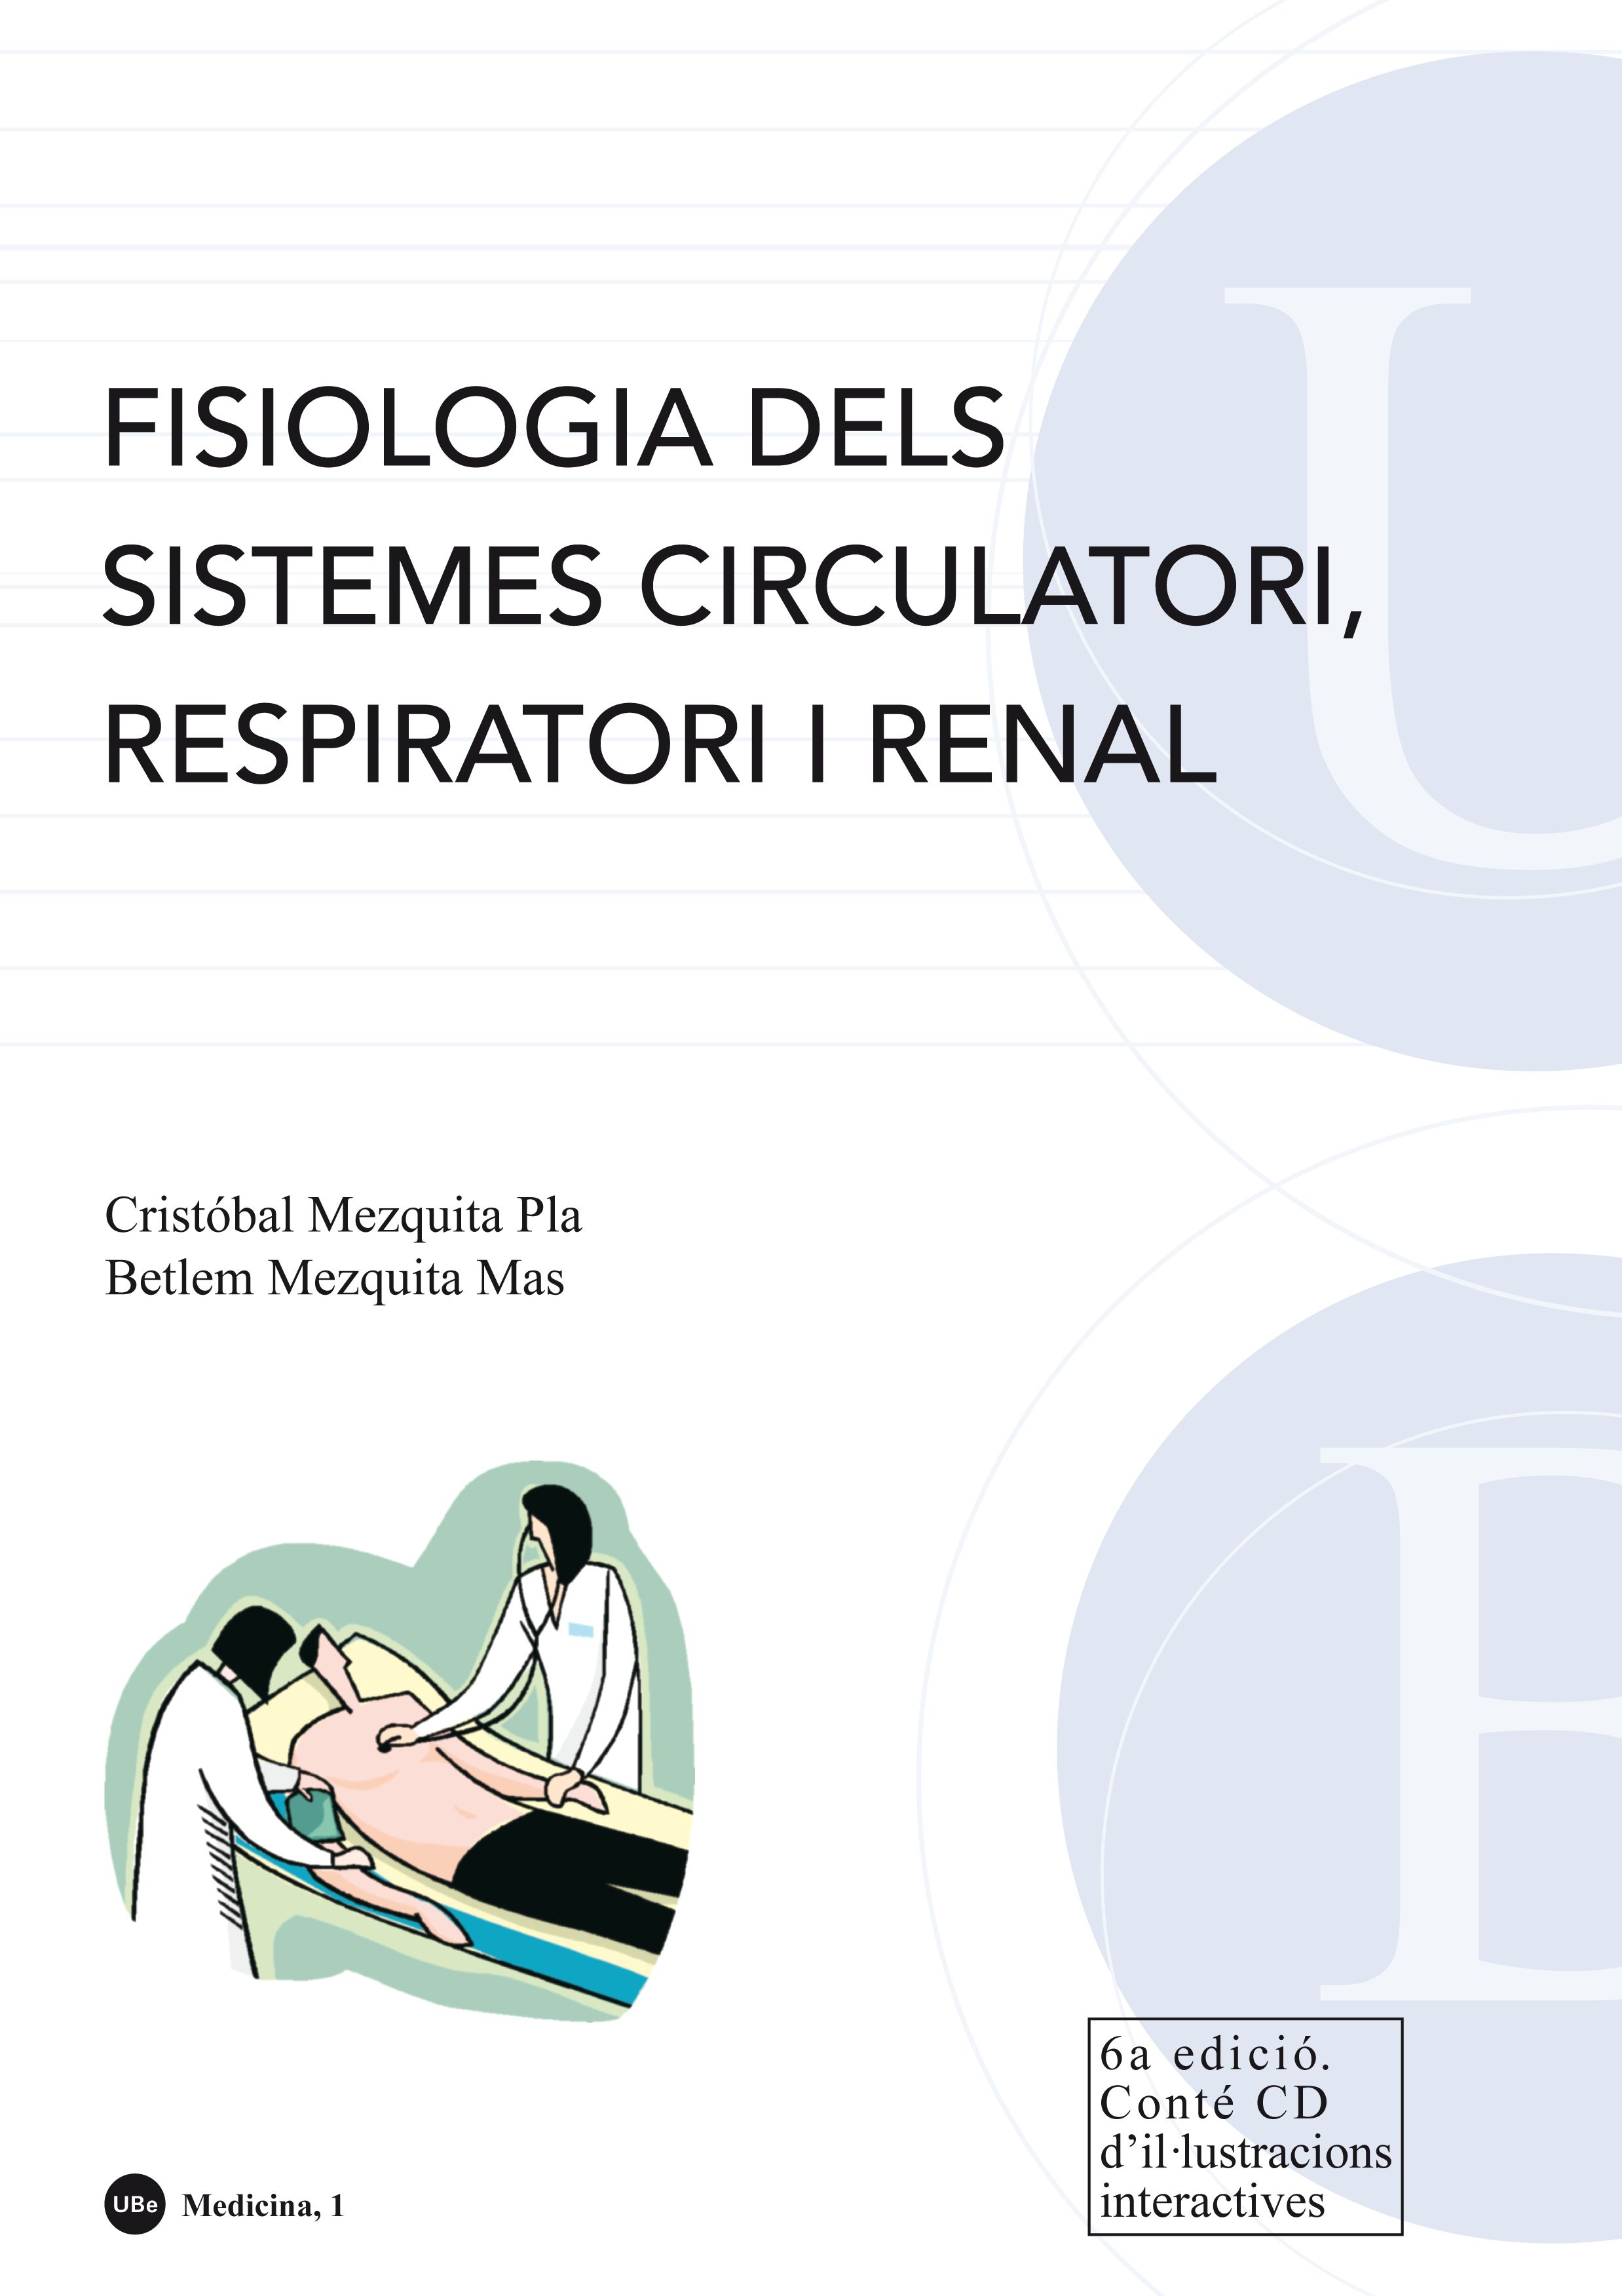 Fisiologia dels sistemes circulatori, respiratori i renal. (ContÃ© CD d